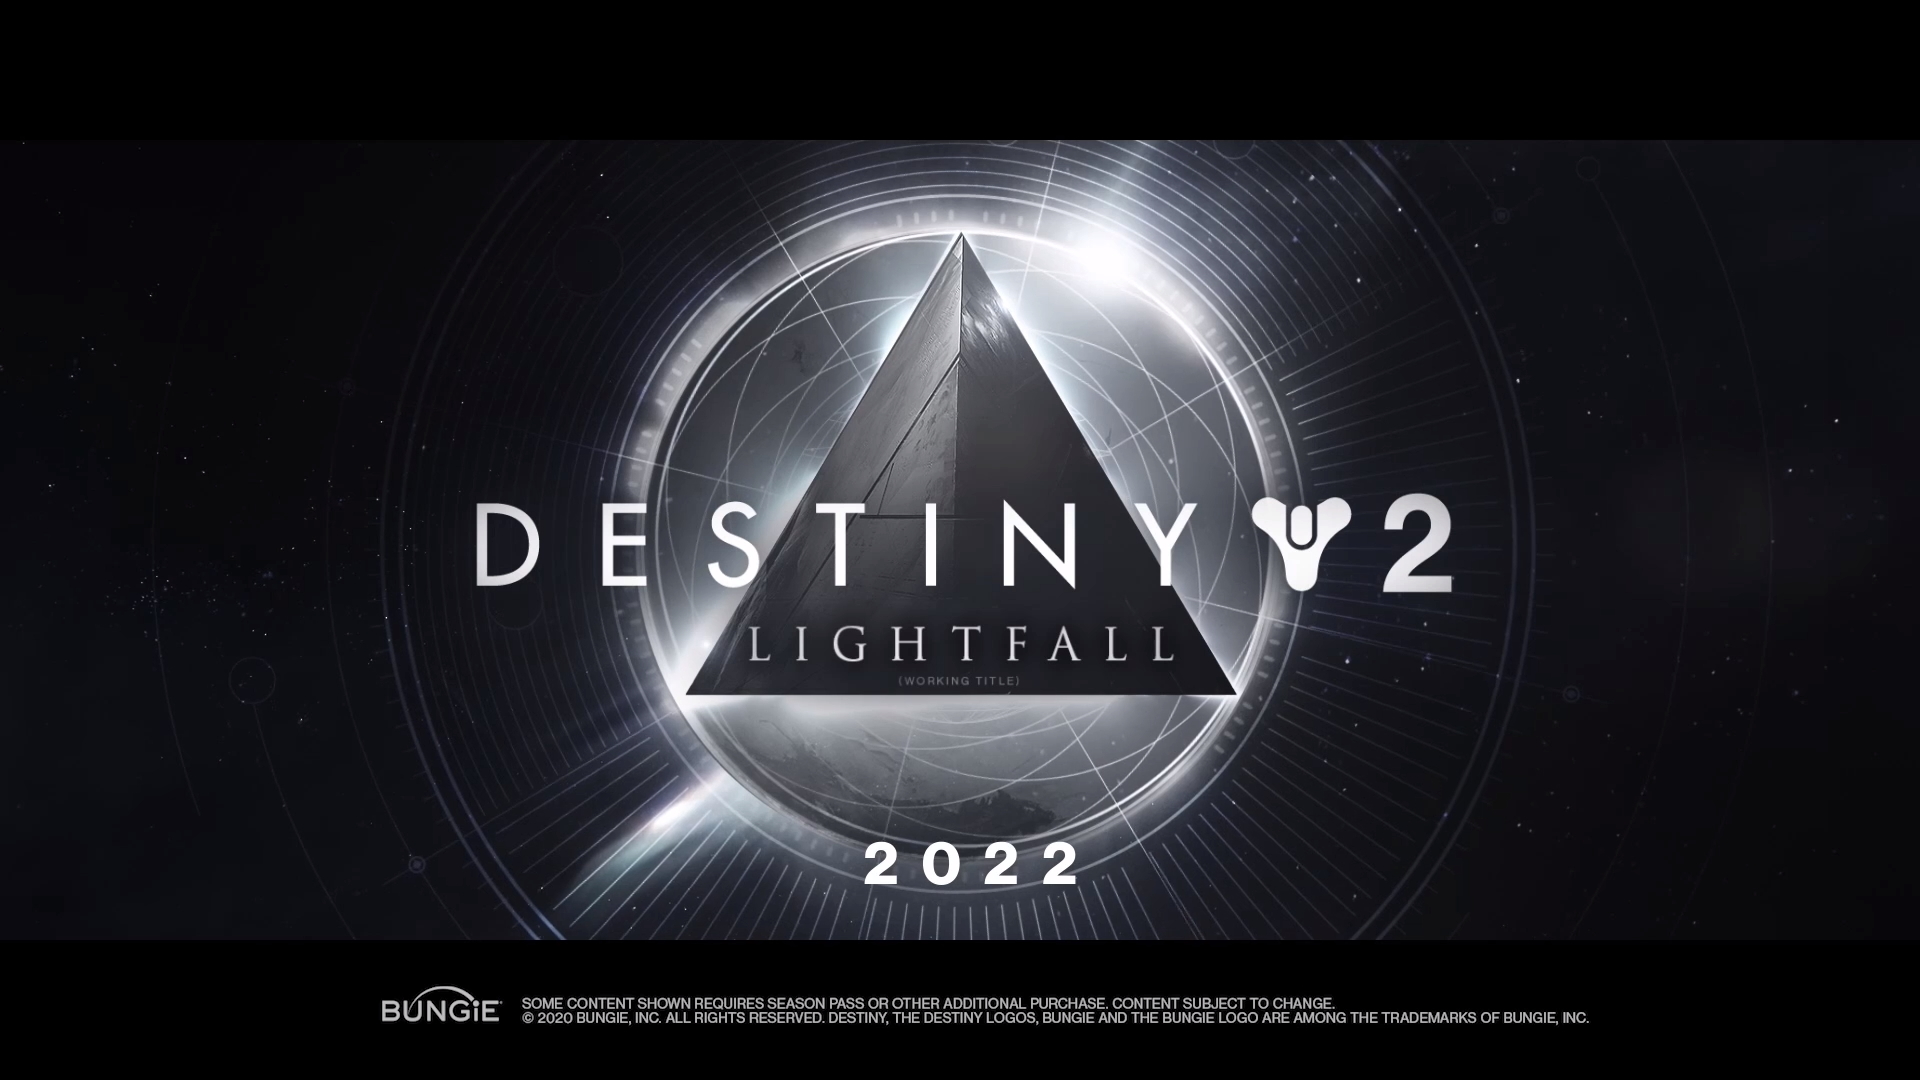 Bungie Announces New Destiny 2 Showcase for August